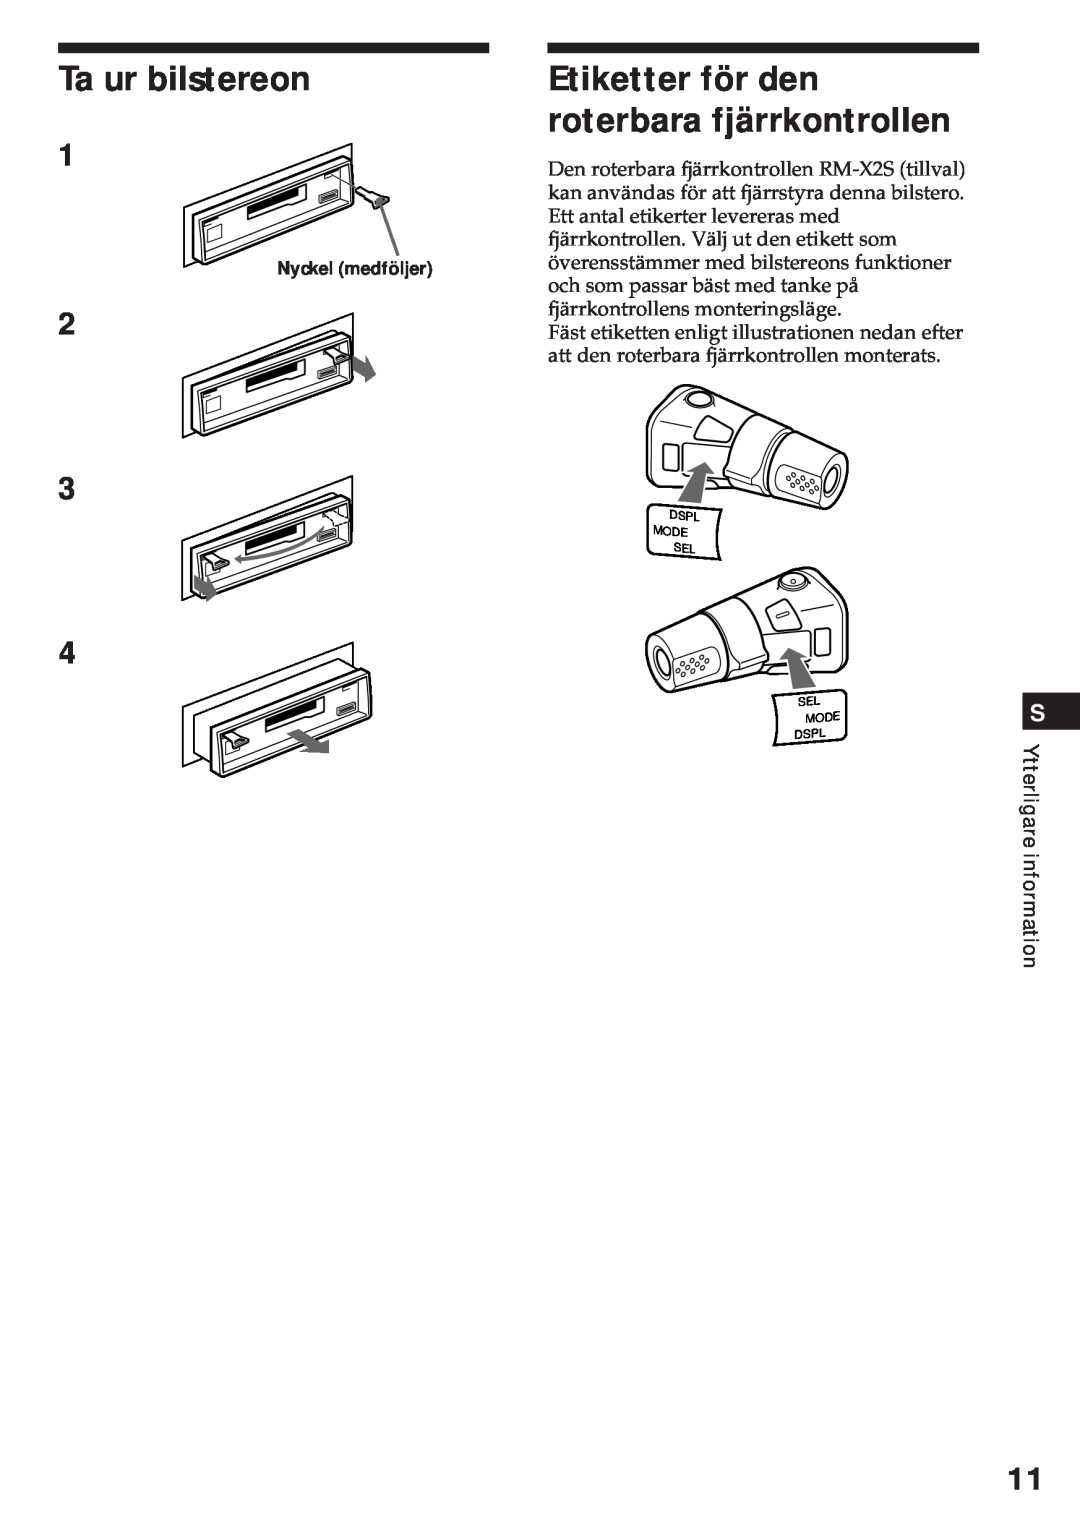 Sony XR-3750 operating instructions Ta ur bilstereon, Etiketter för den roterbara fjärrkontrollen 